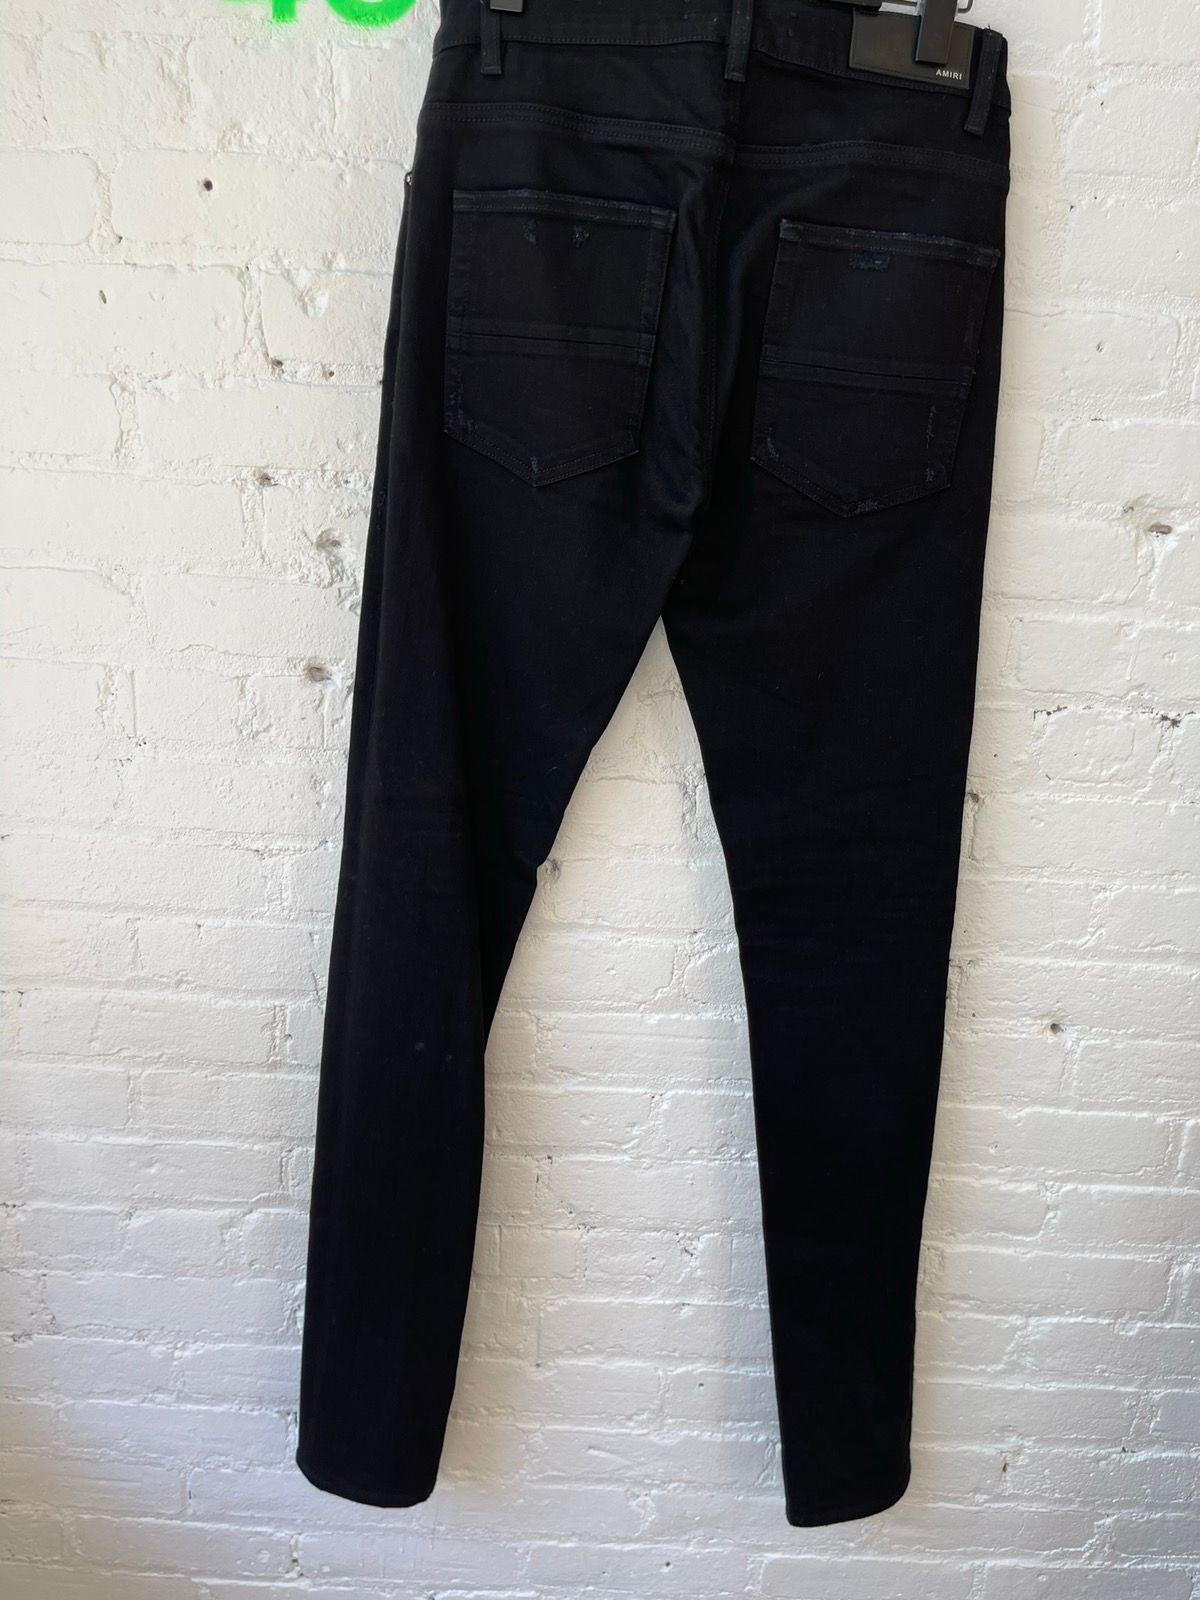 Amiri Black skinny distressed jeans sz 29